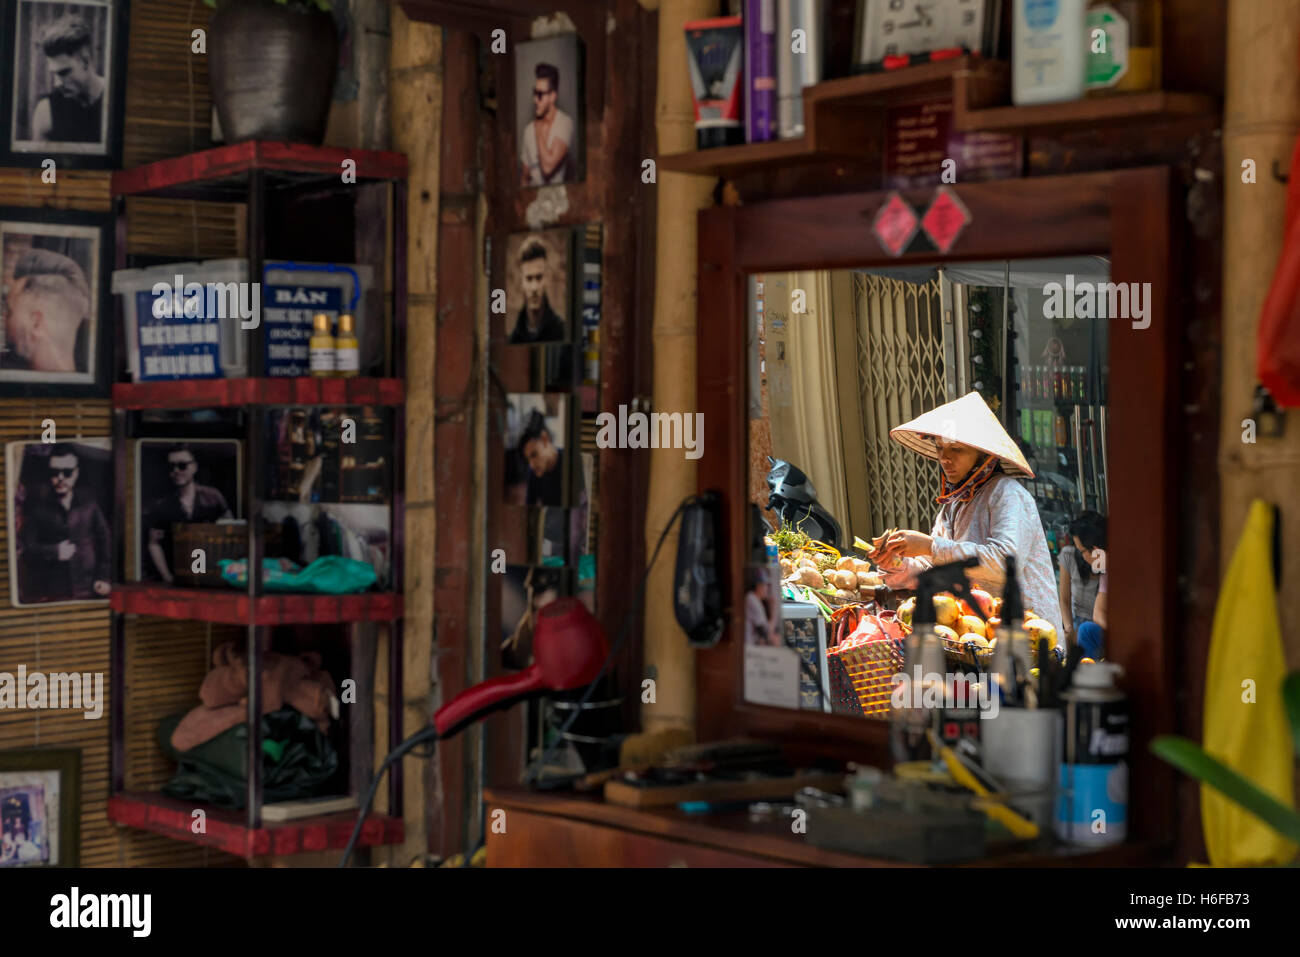 Reflexion von einem Obst-Verkäufer auf dem Spiegel einen Friseurladen in einer Straße von Hanoi. Stockfoto